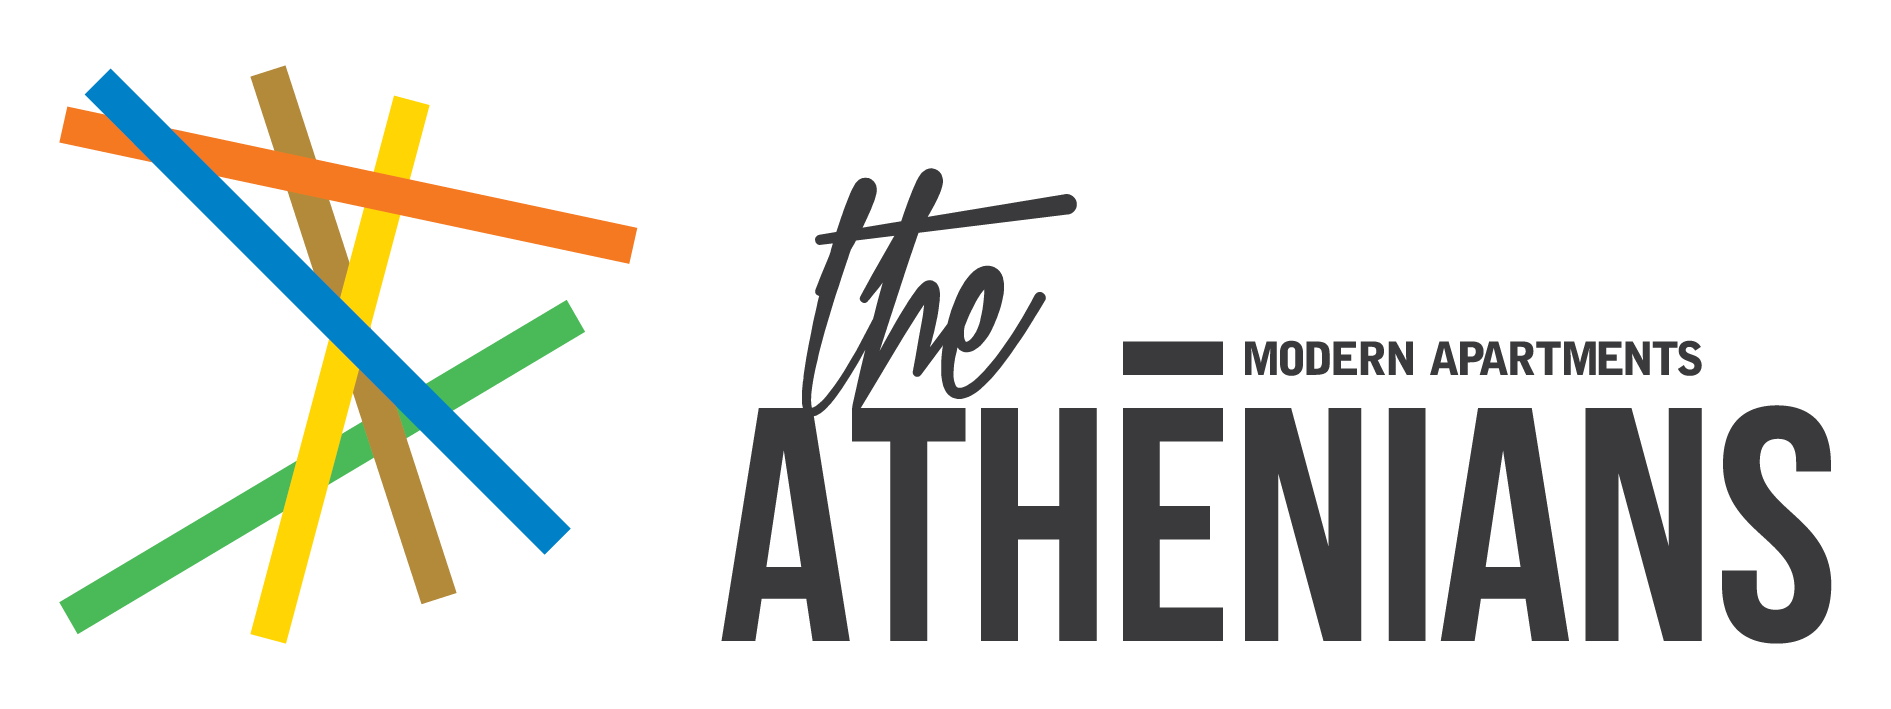 The Athenians